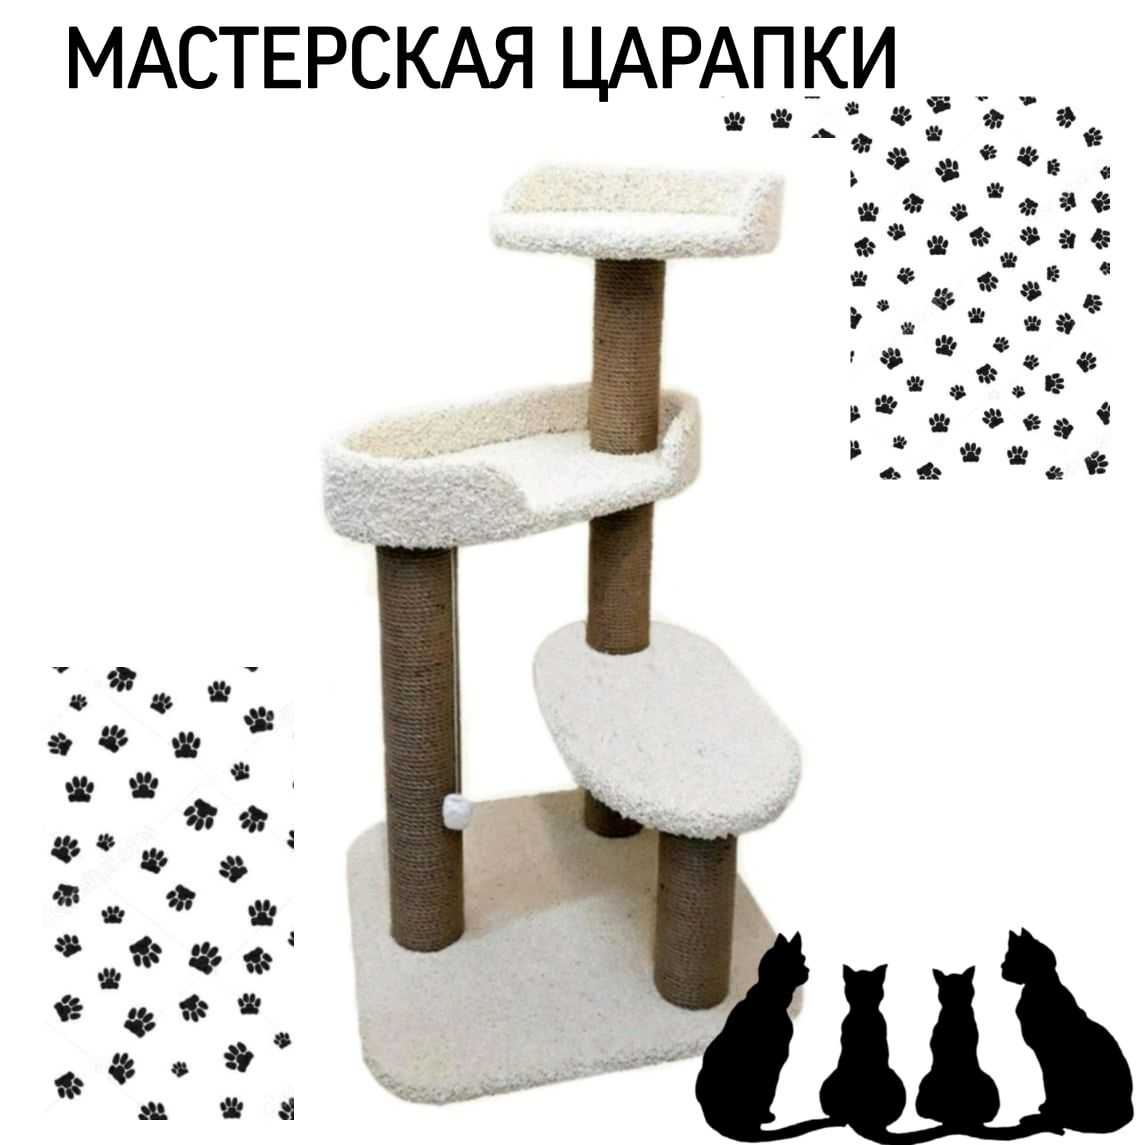 Правильная когтеточка своими руками для кошки: конструкция и типы, материалы, сборка